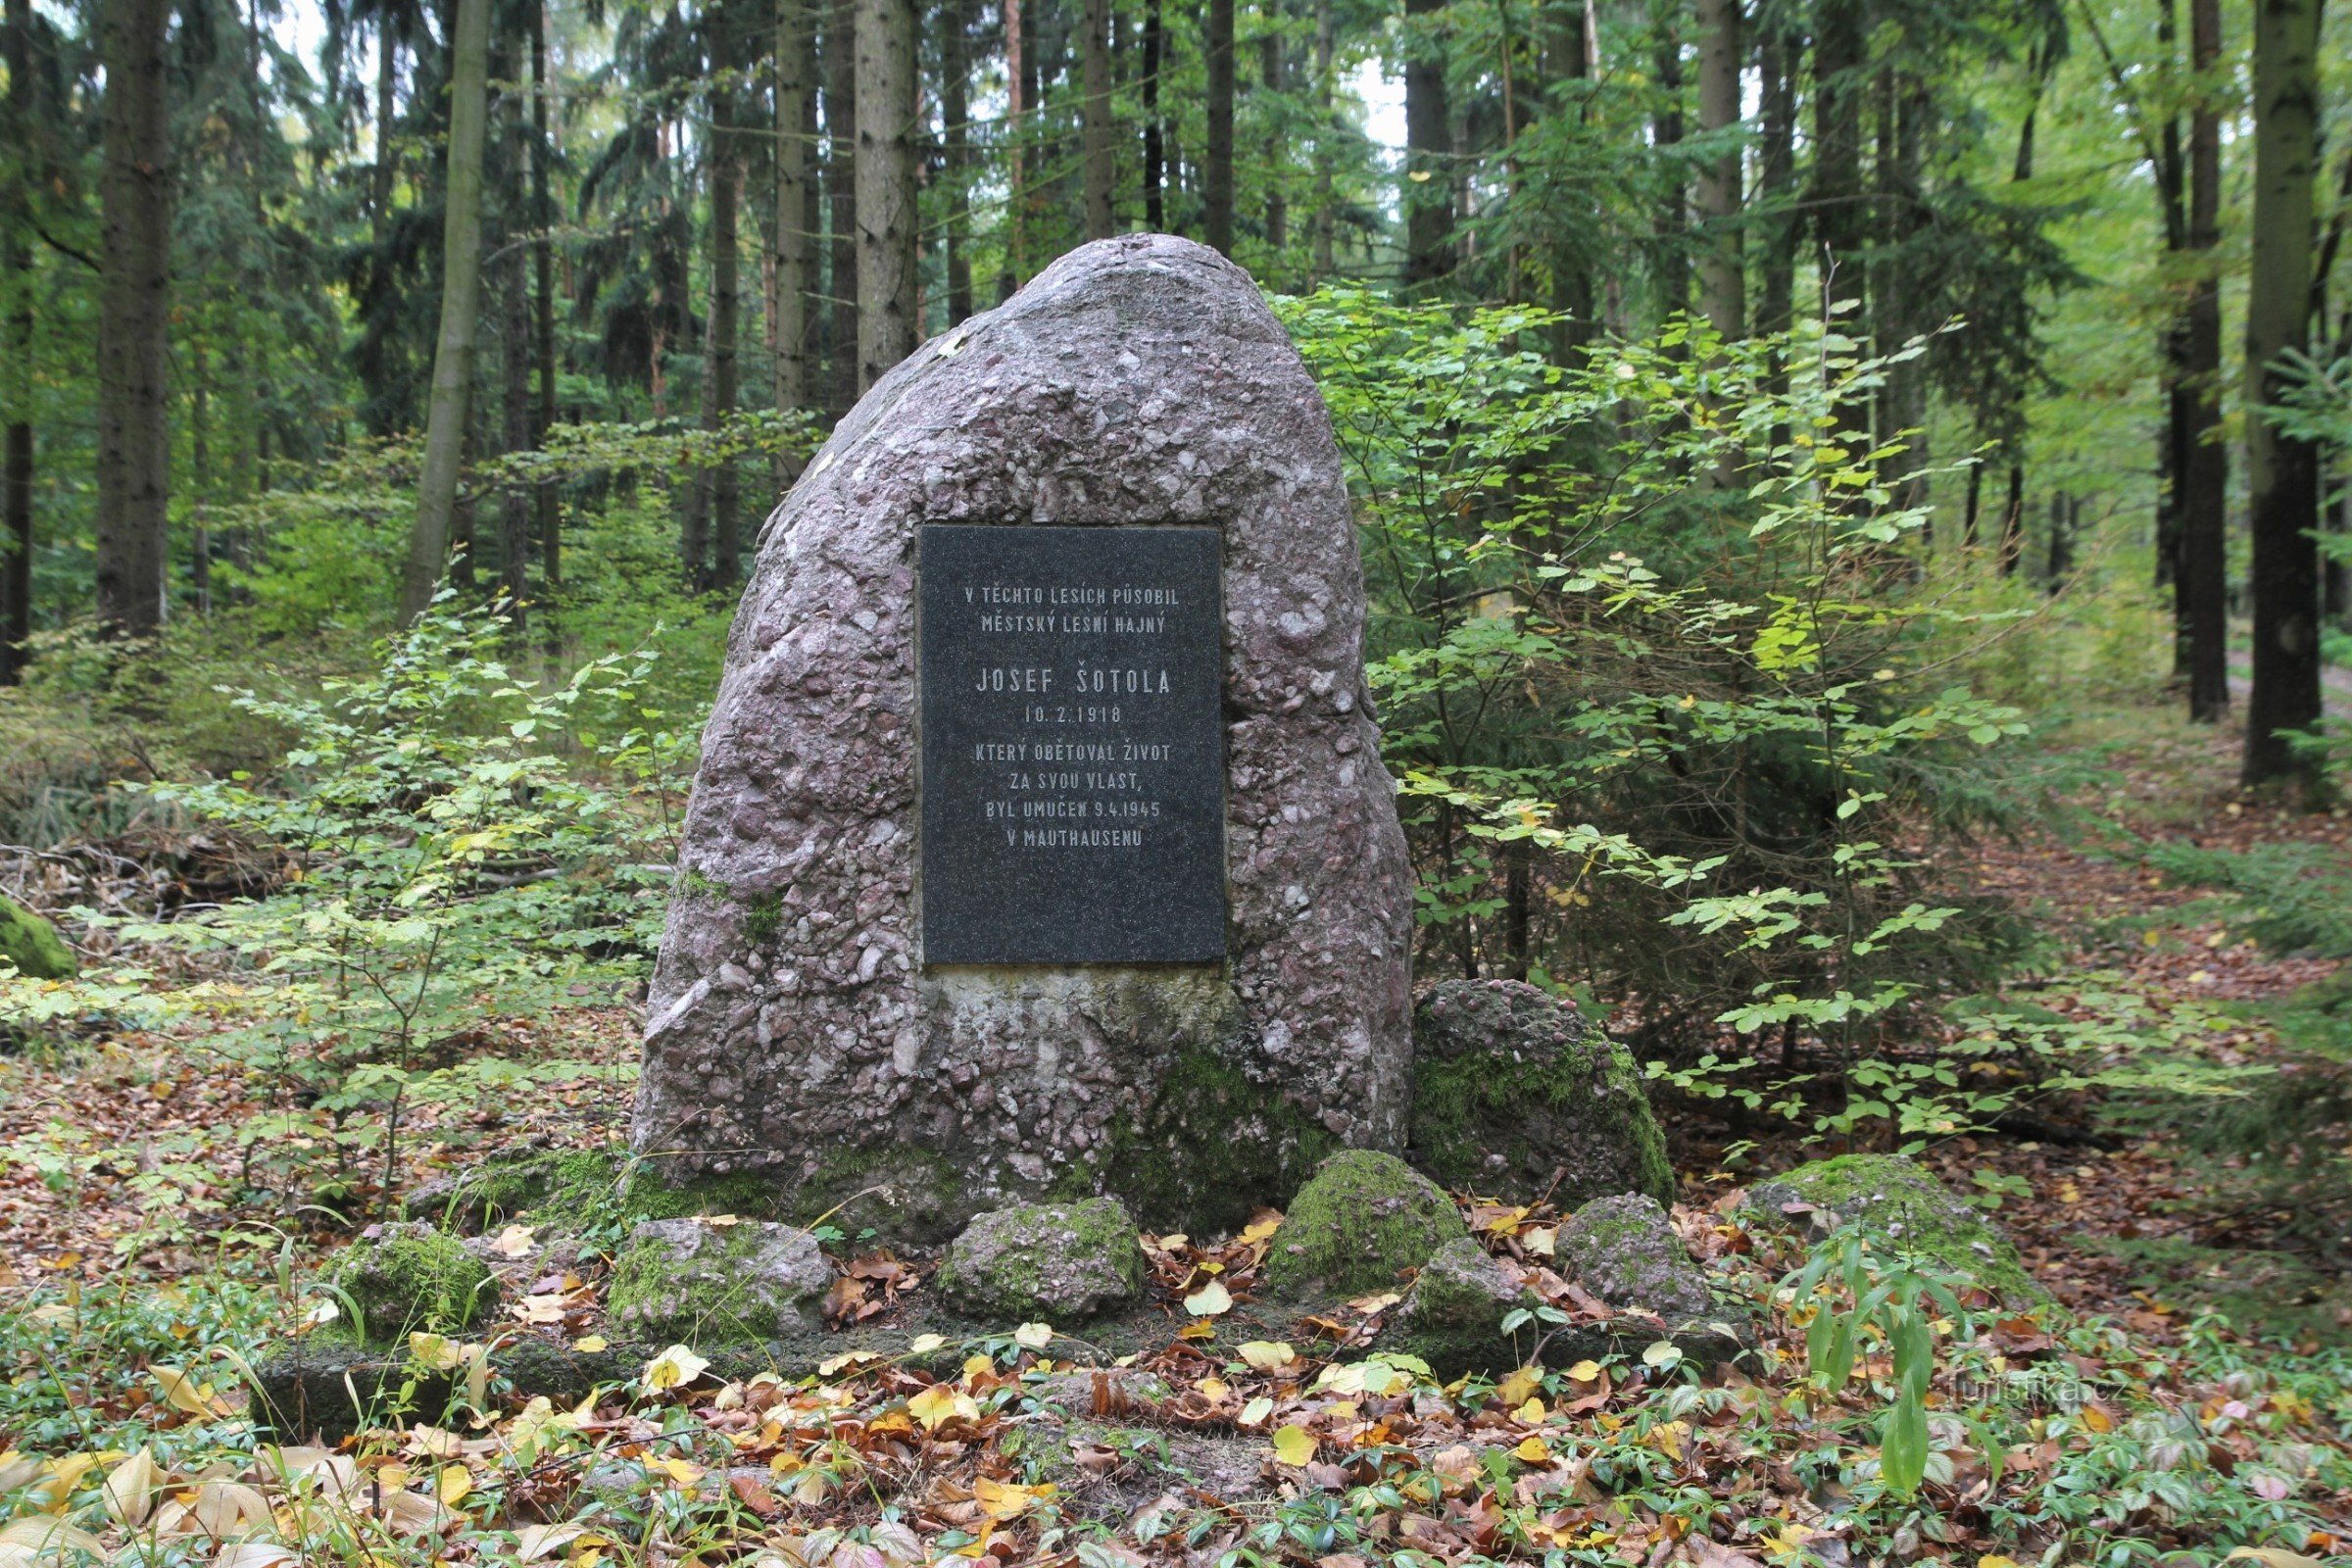 Monument à Josef Šotola